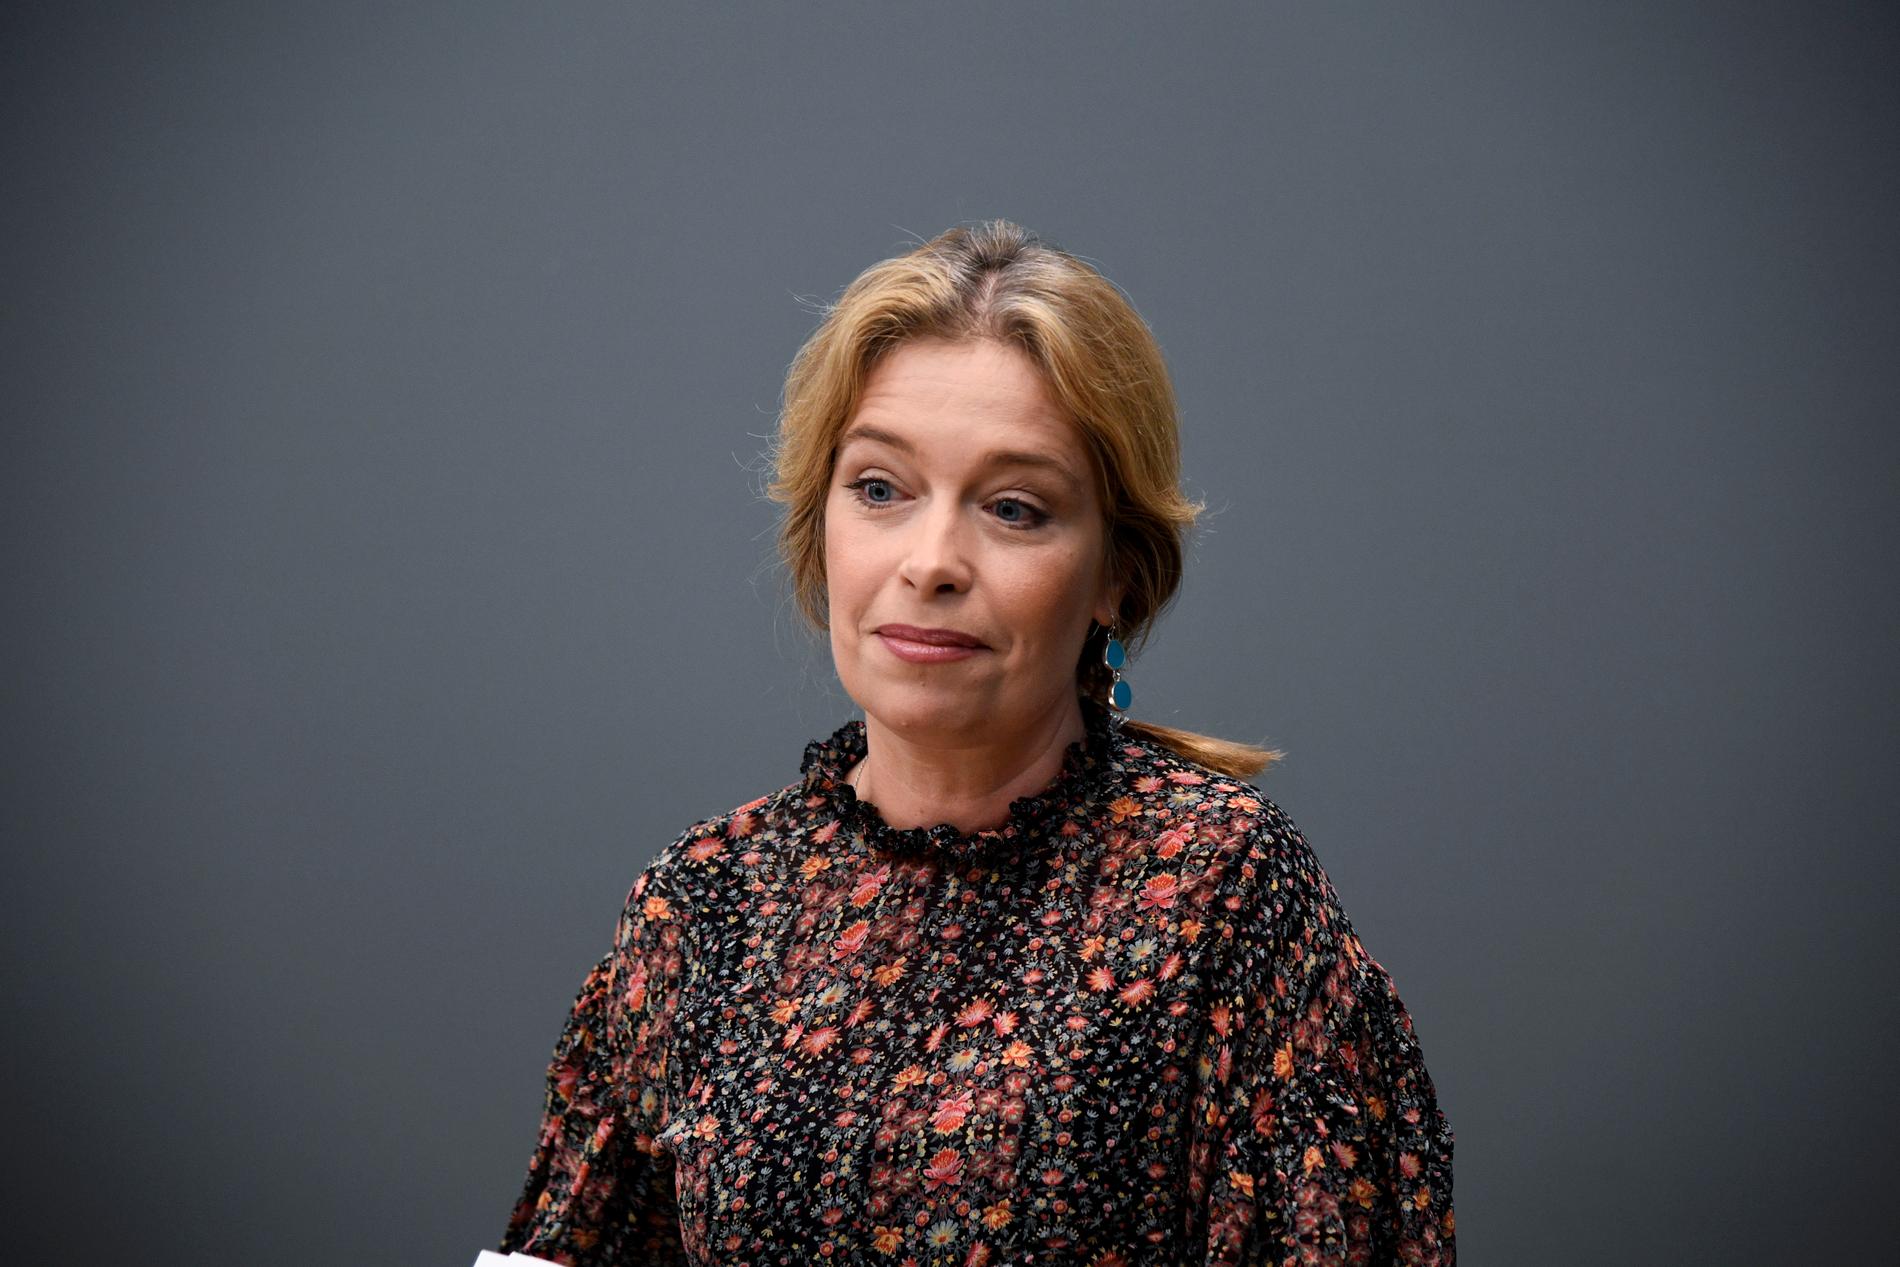 Klimat- och miljöminister Annika Strandhäll får inte igenom propositionen om ändrade regler för strandskydd. Riksdagen vill avslå förslagen.